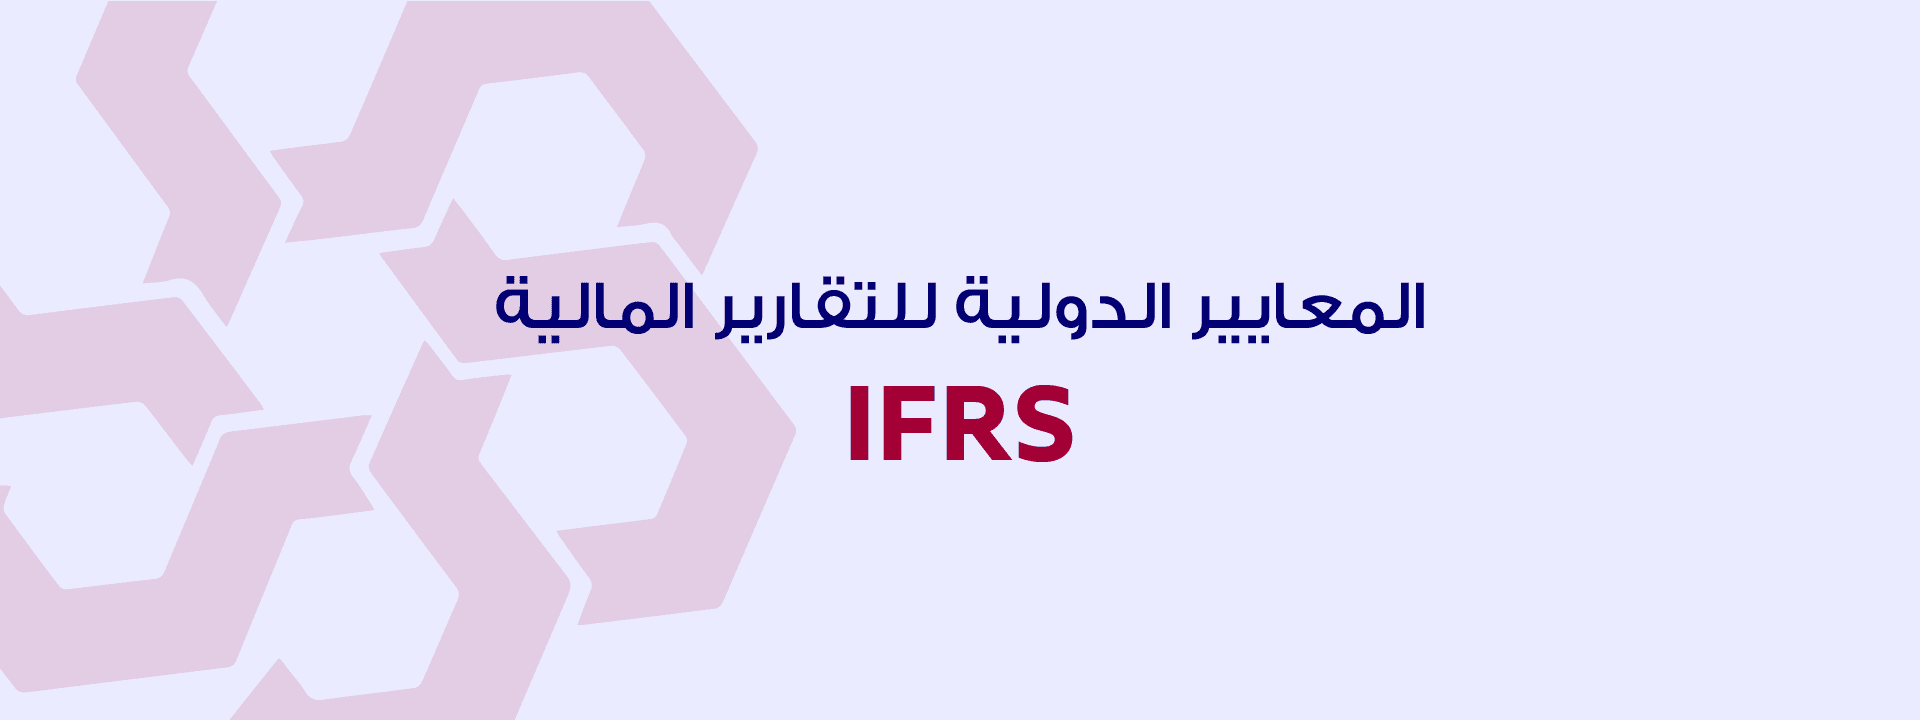 المعايير الدولية للتقارير المالية IFRS